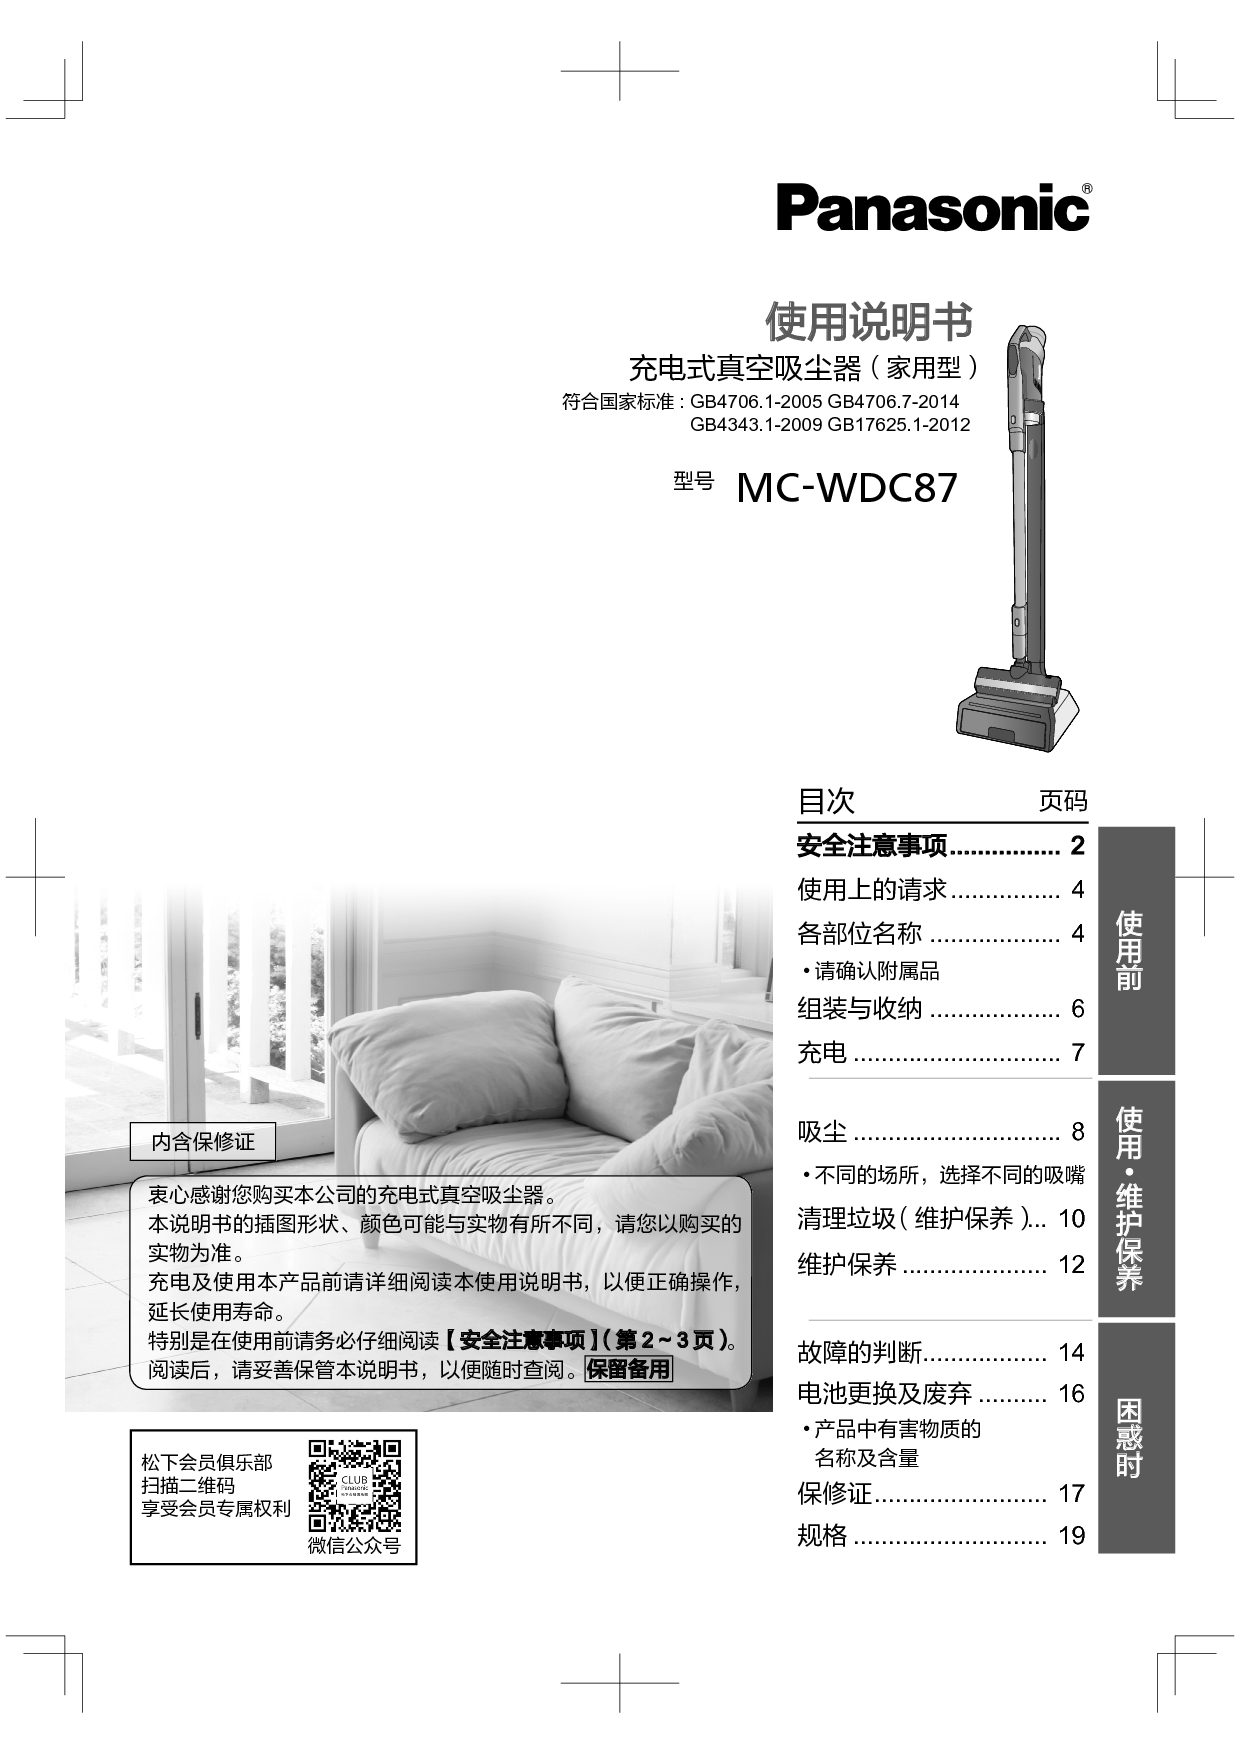 松下 Panasonic MC-WDC87 使用说明书 封面